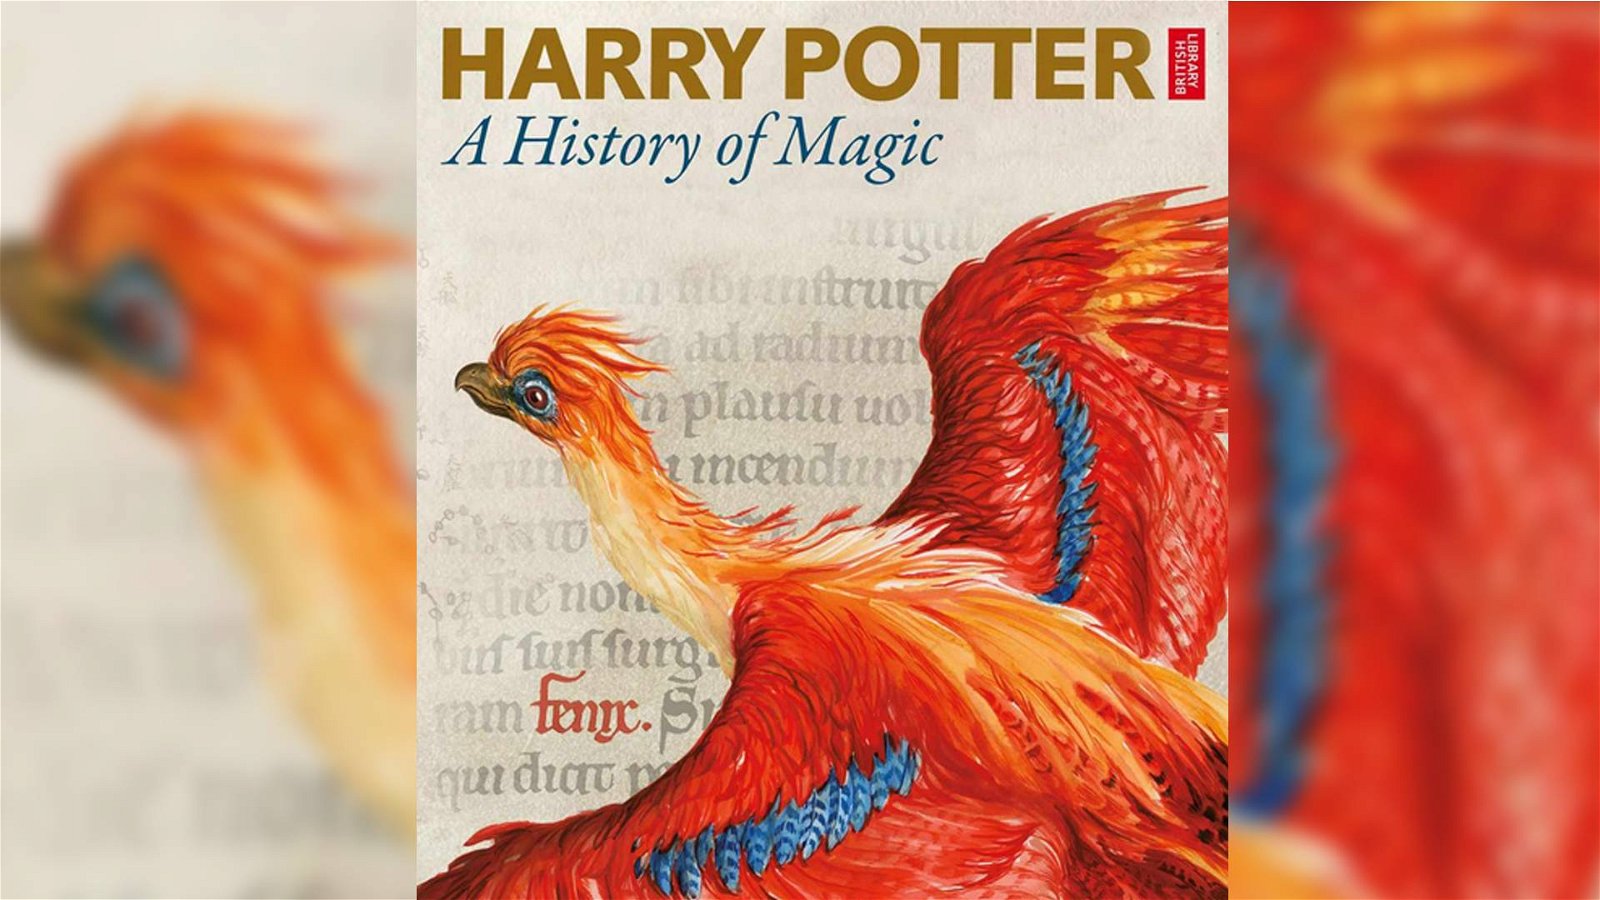 Immagine di Harry Potter: A History of Magic, la mostra alla British Library è visitabile online